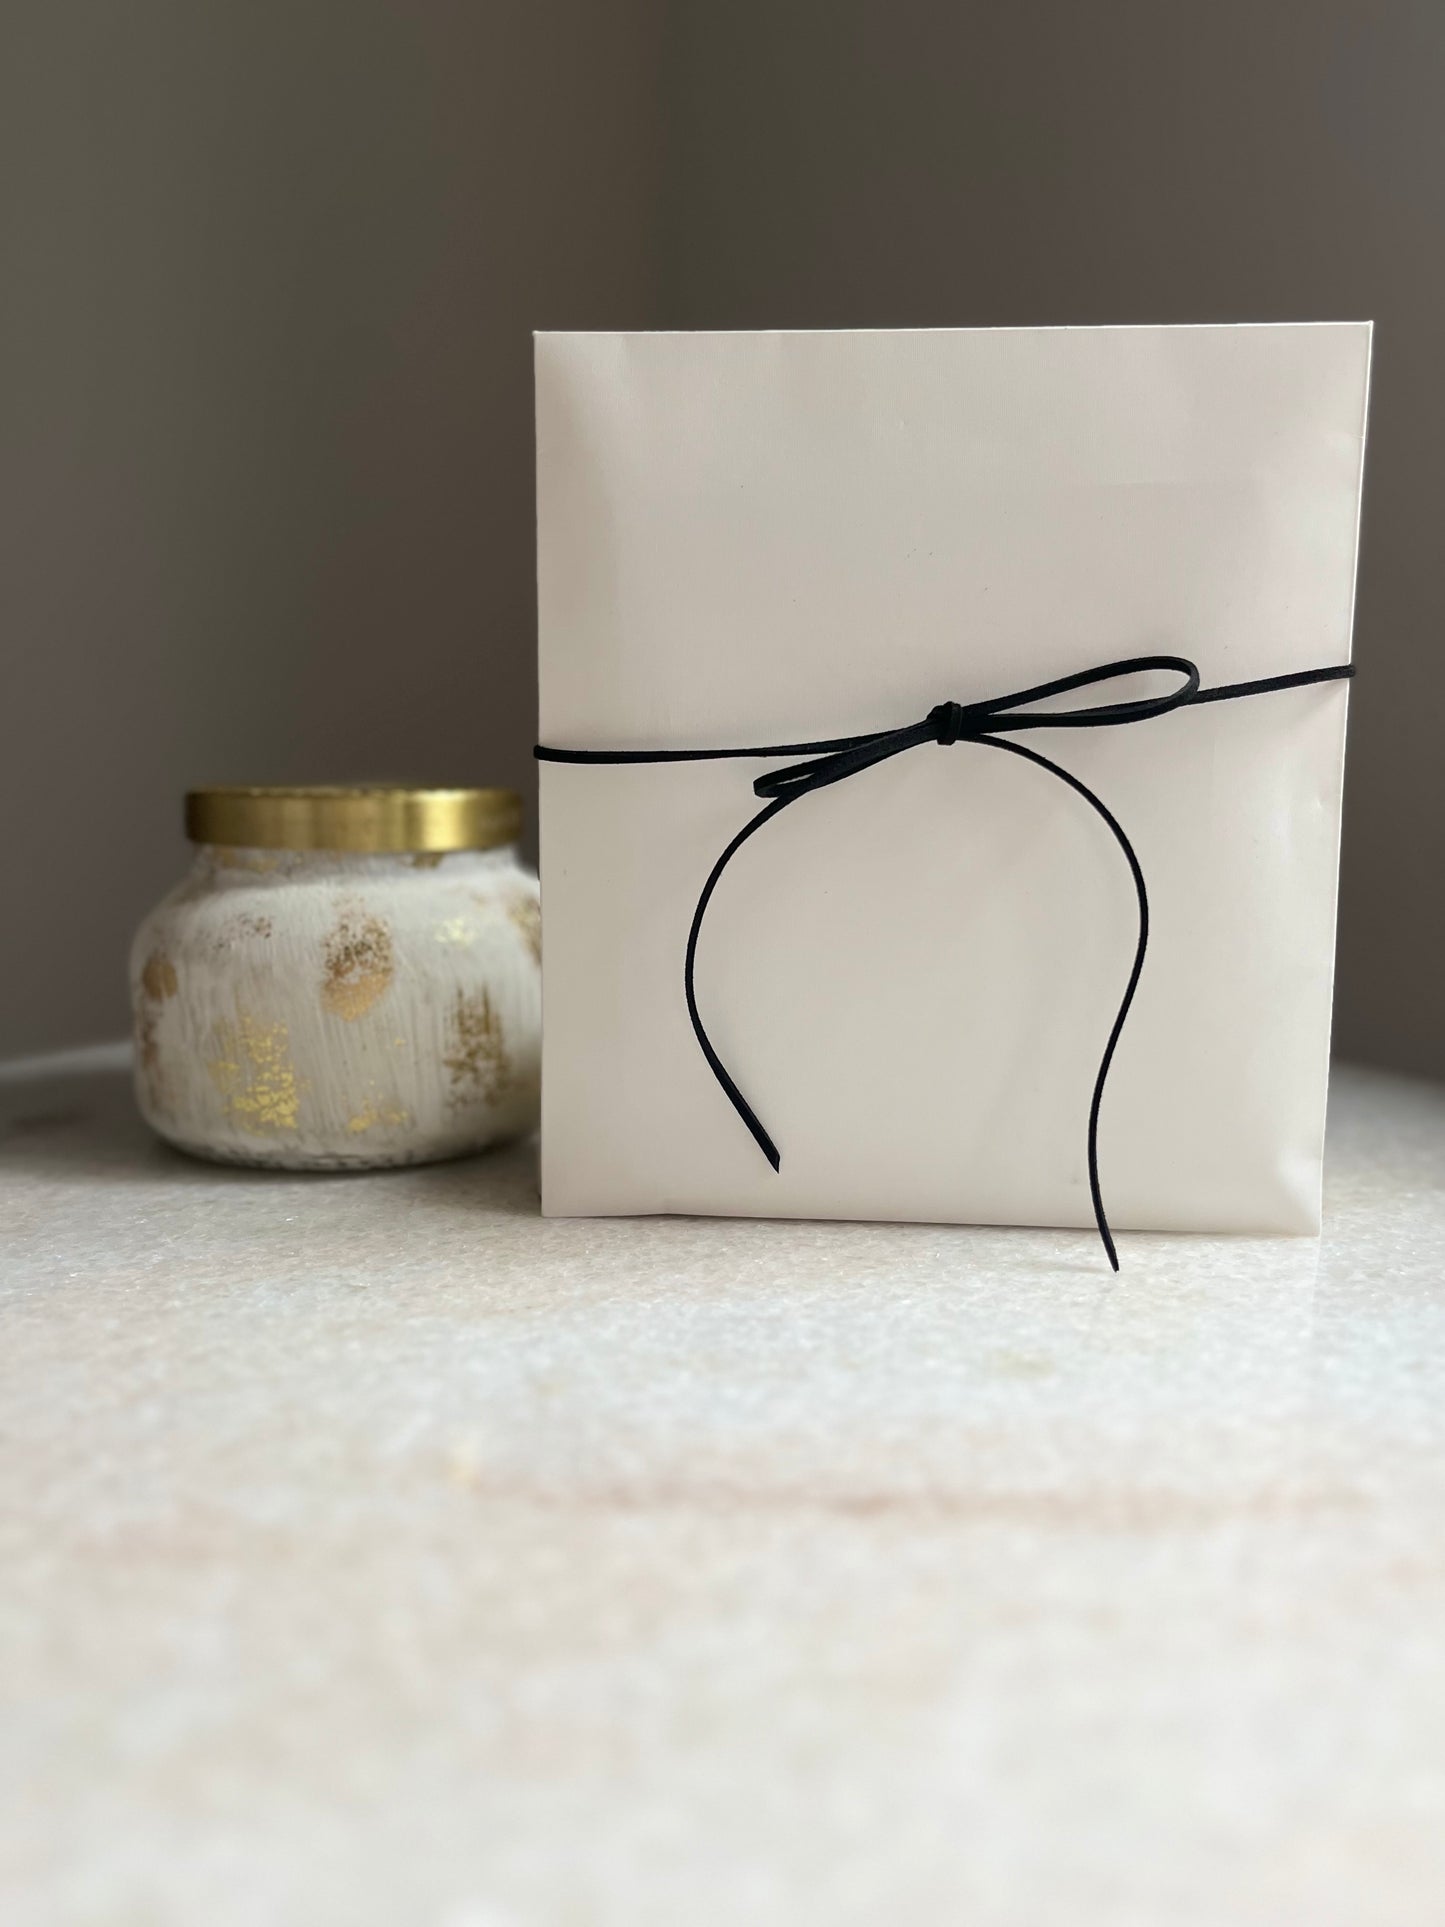 Modern Gift Card Holder - Ivory White 'Celebrate'